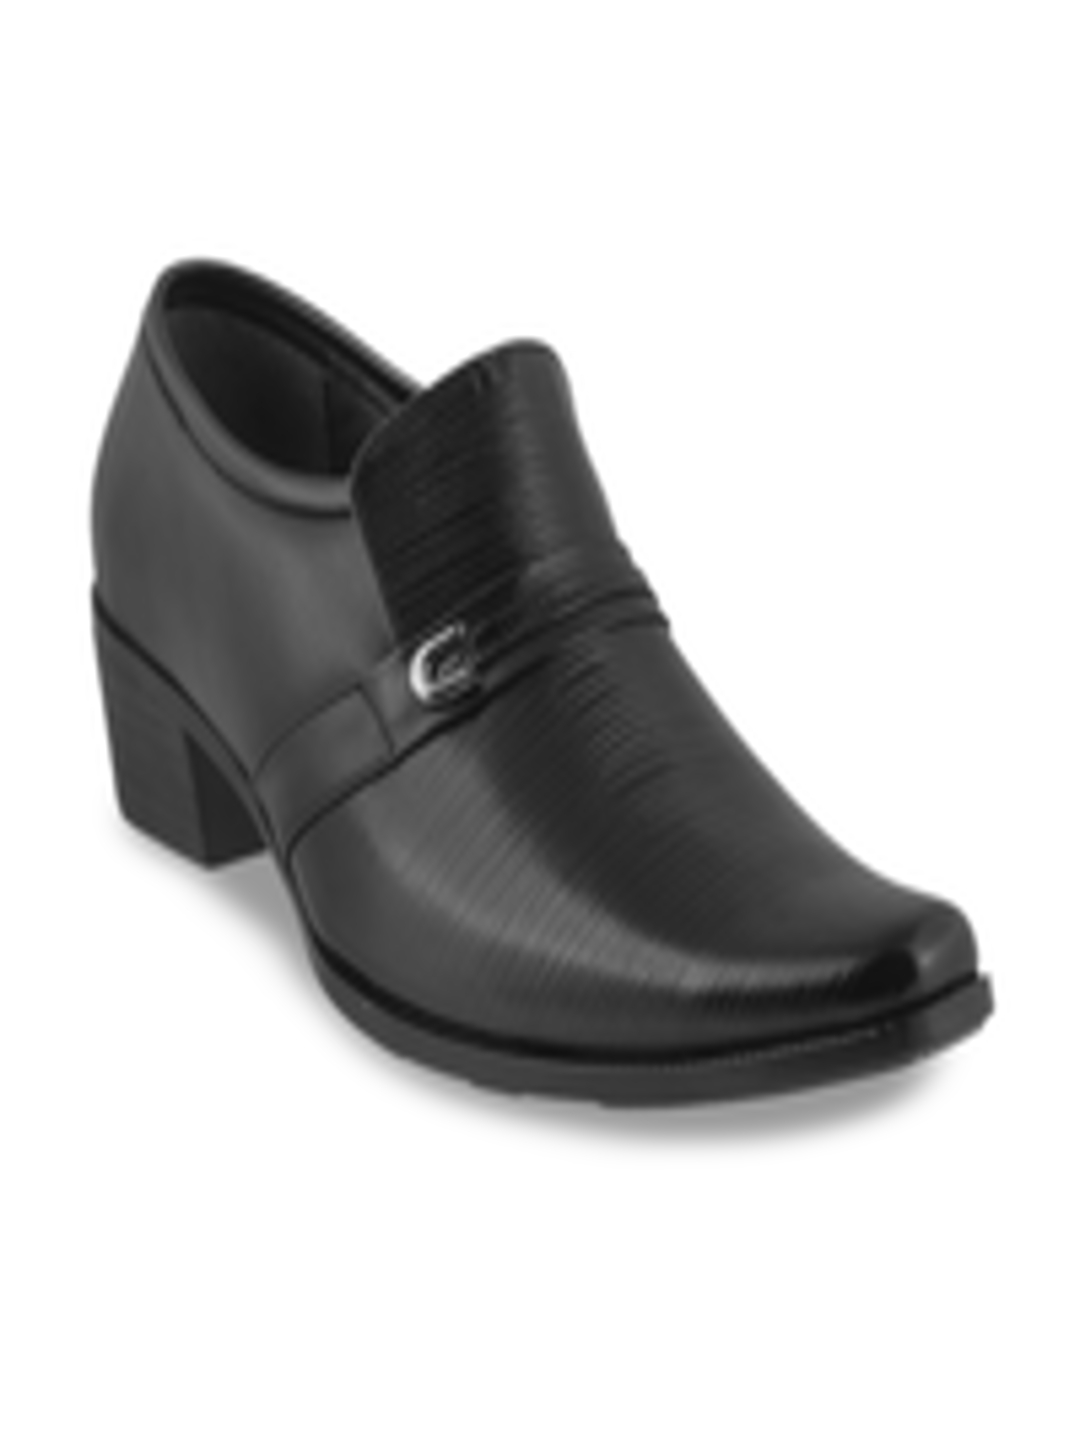 Buy Mochi Men Black Leather Slip On Formal Shoes - Formal Shoes for Men ...